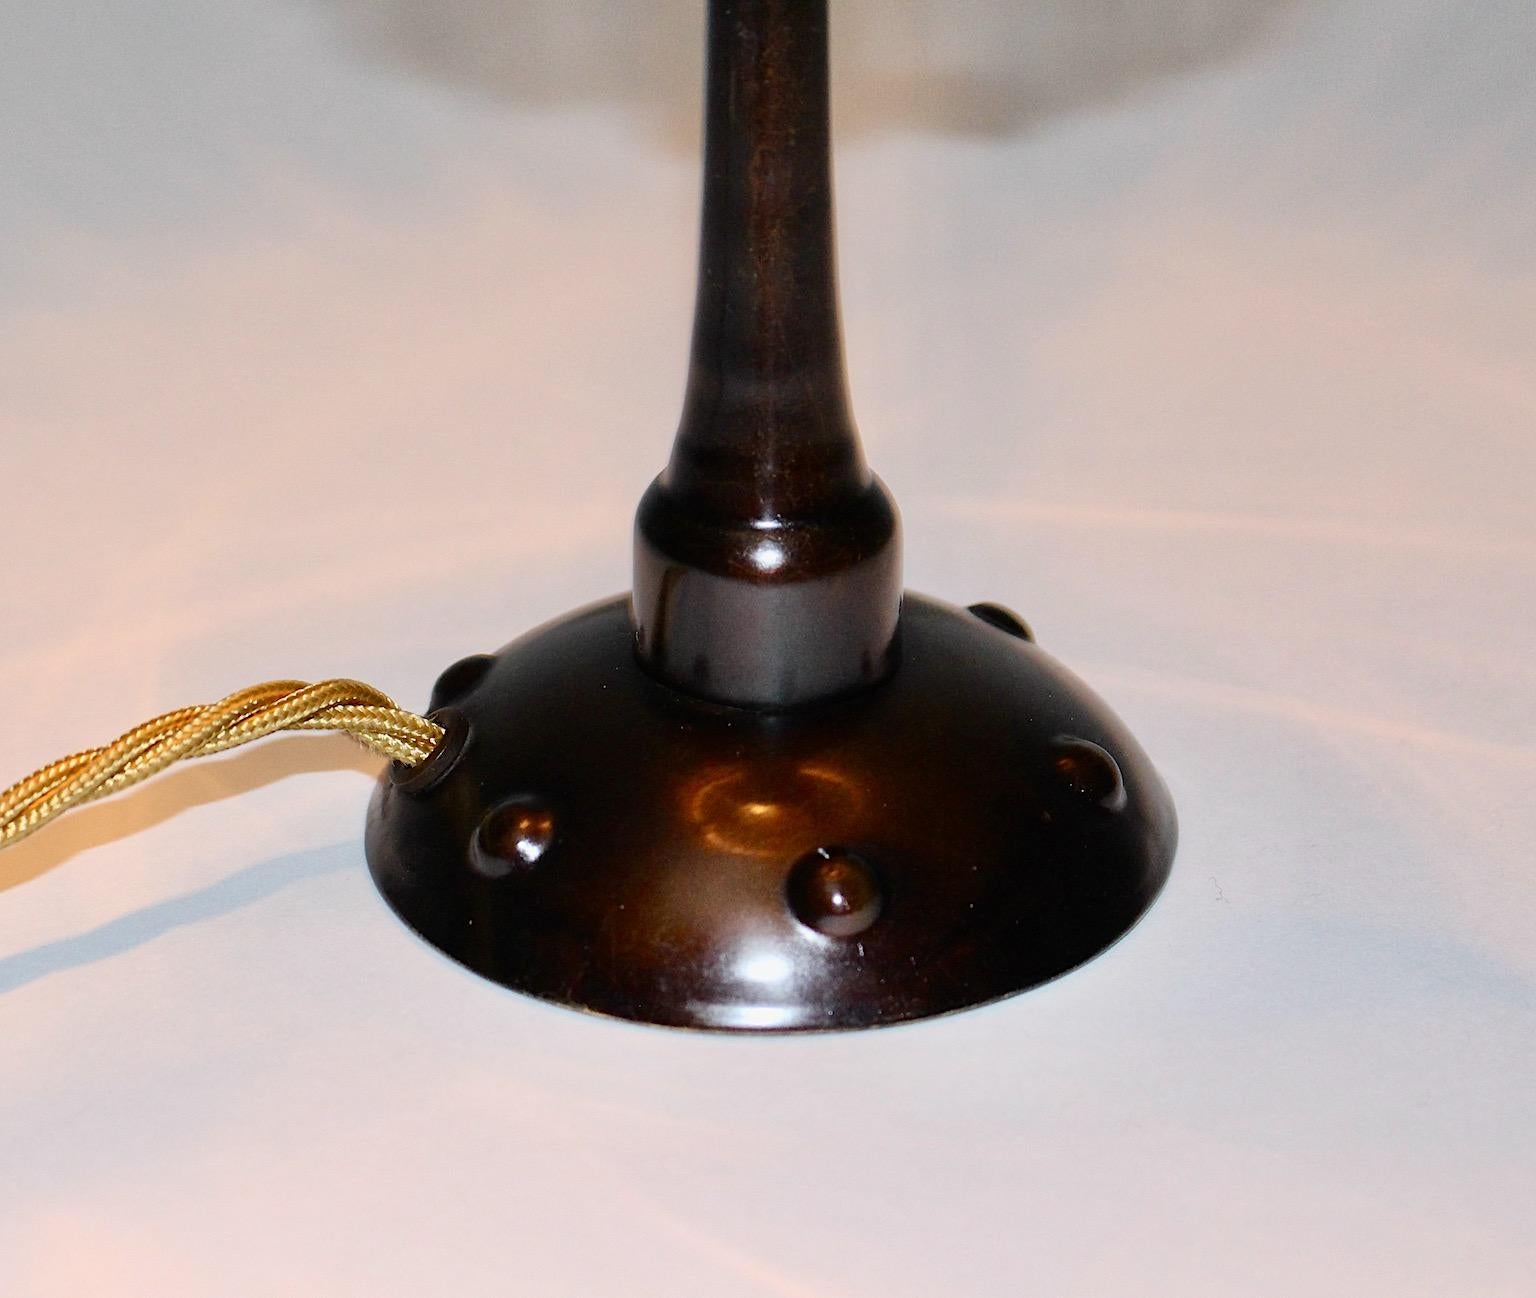 French Art Nouveau Vintage Burnished Metal Amber Table Lamp Bedside Lamp c 1910 France For Sale